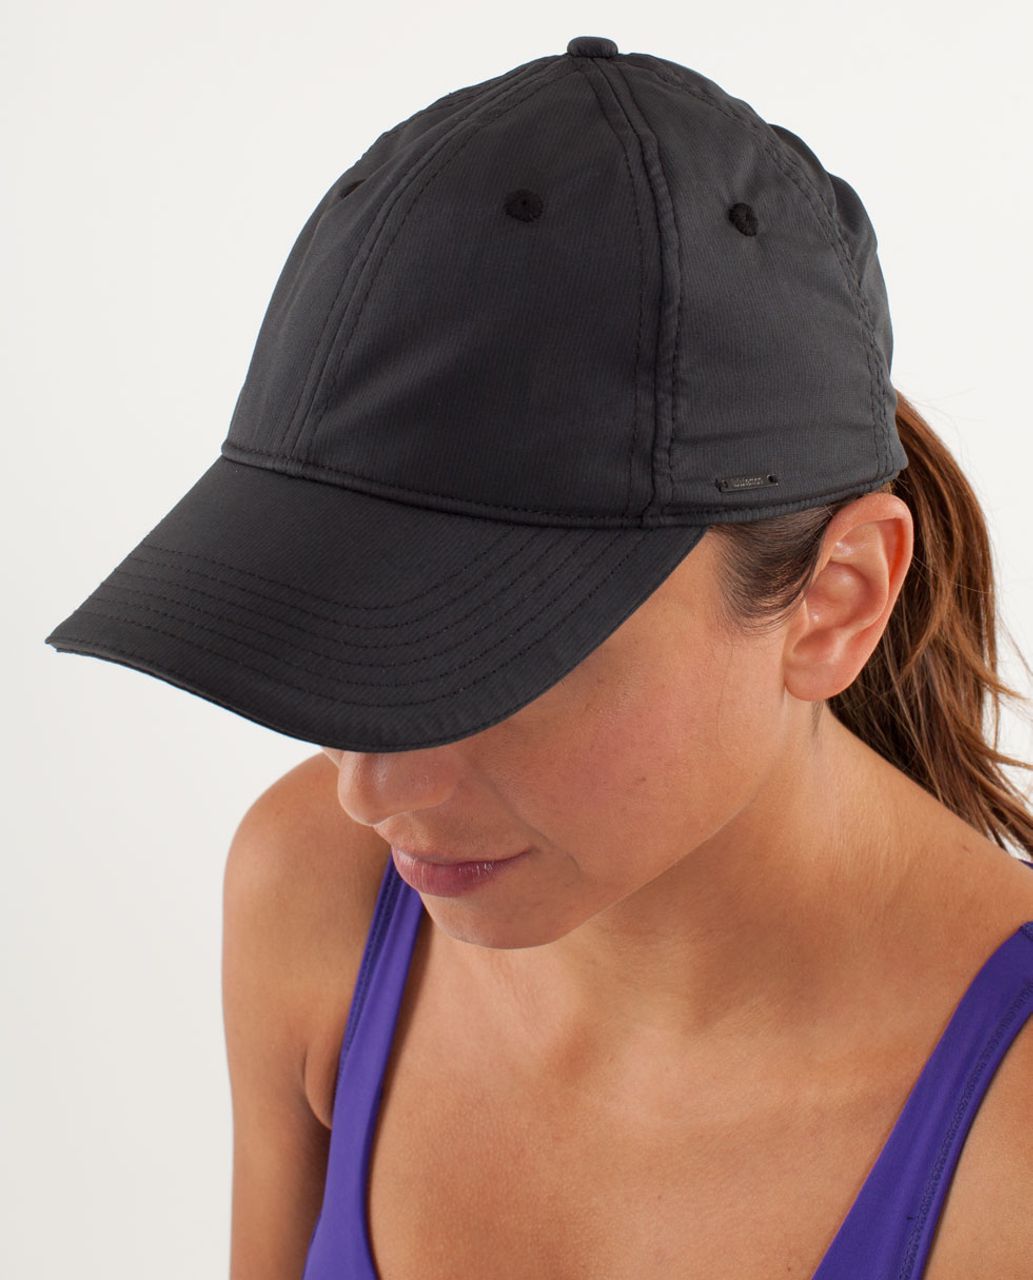 black baseball cap womens